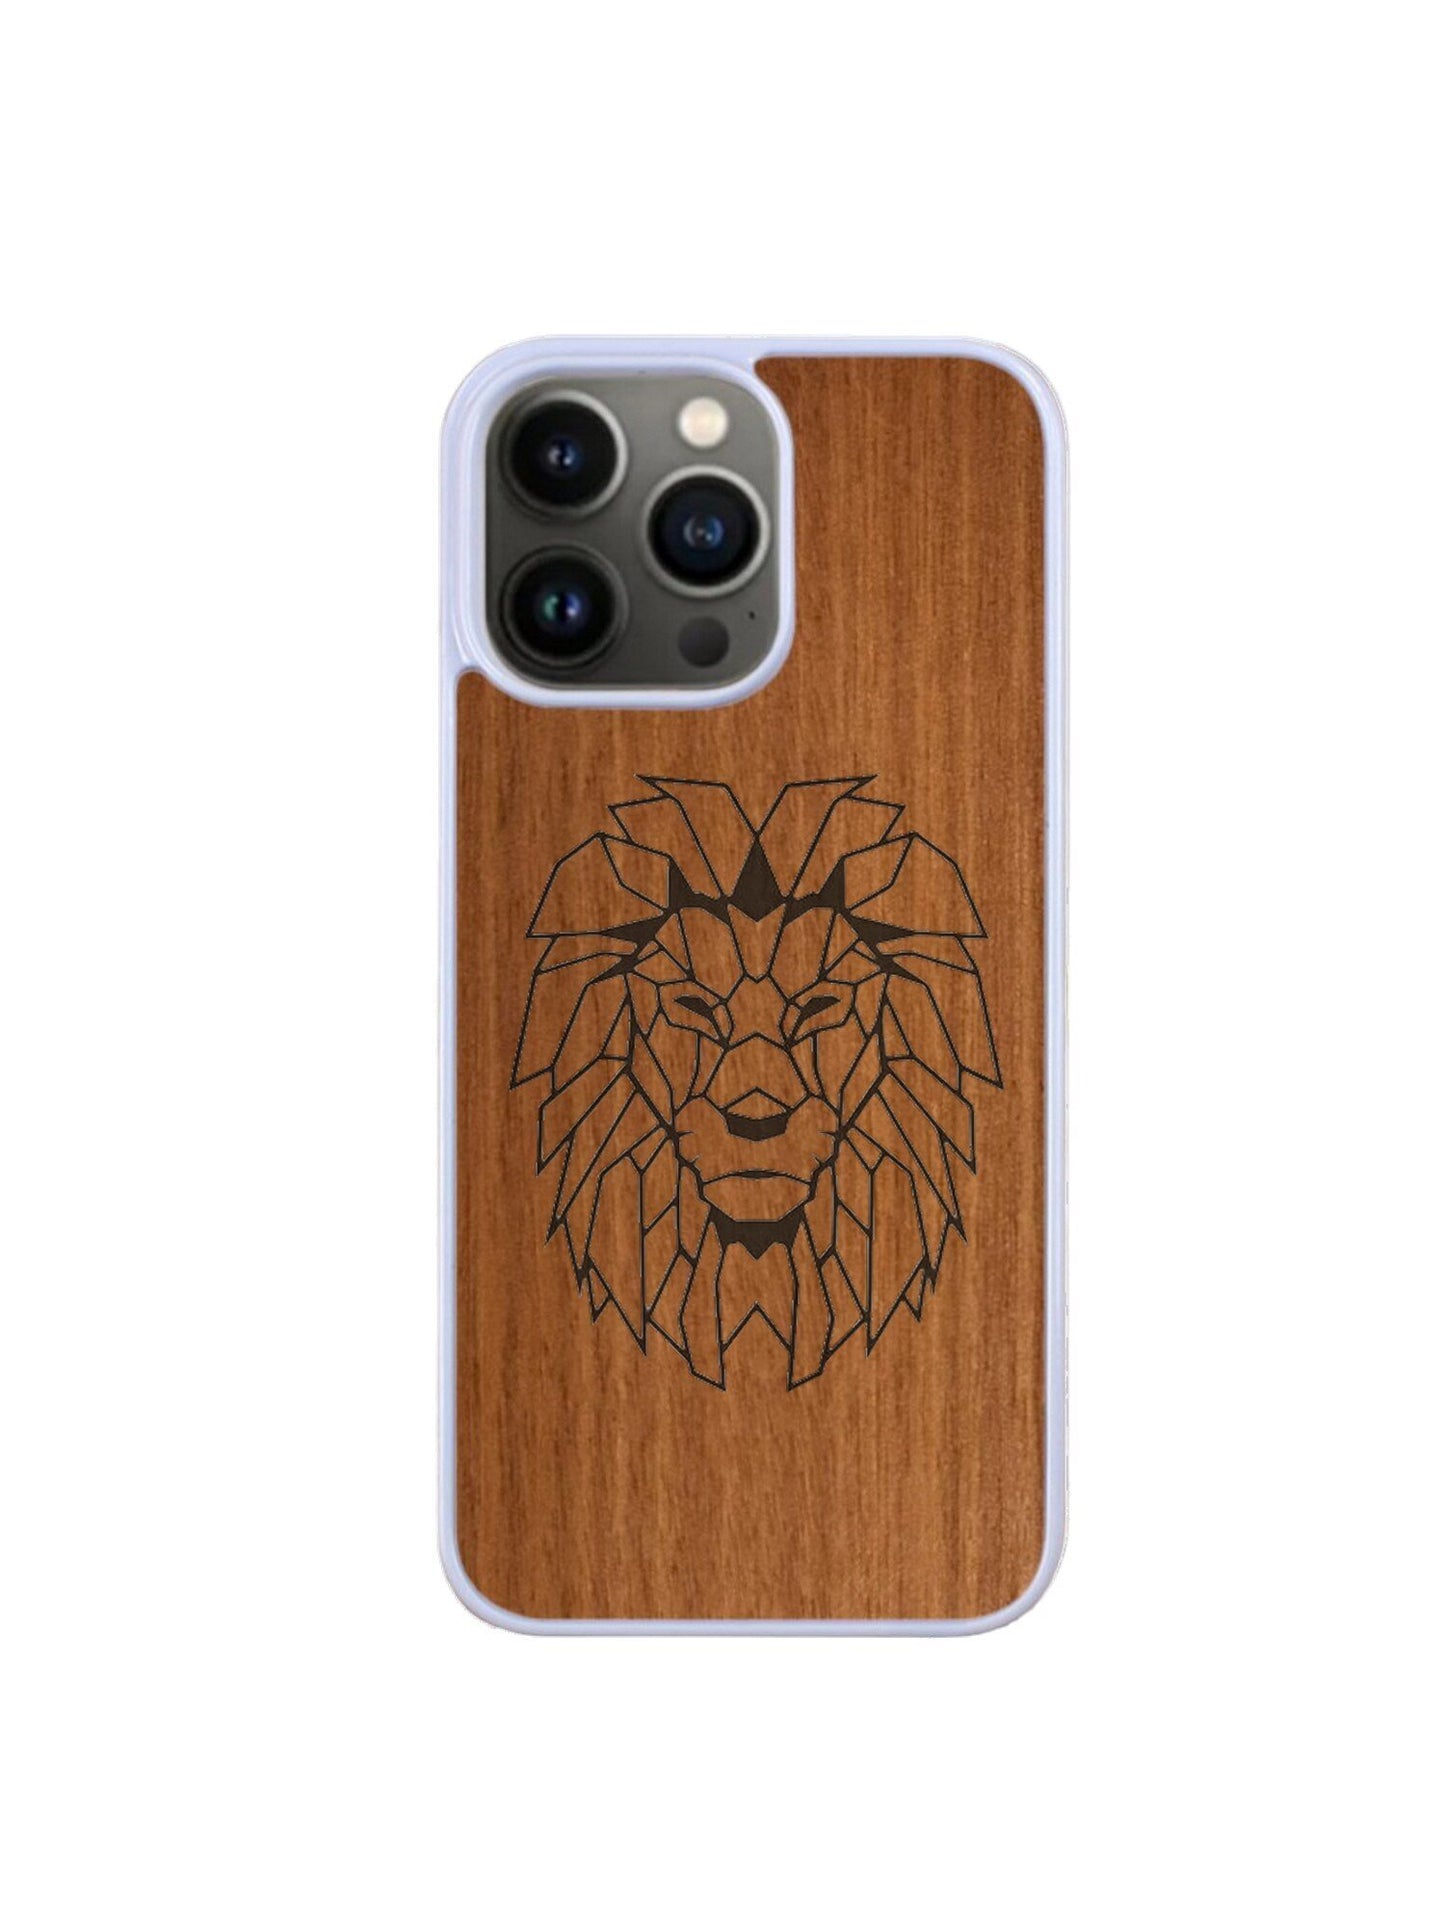 Coque Iphone blanc - Lion Gravure